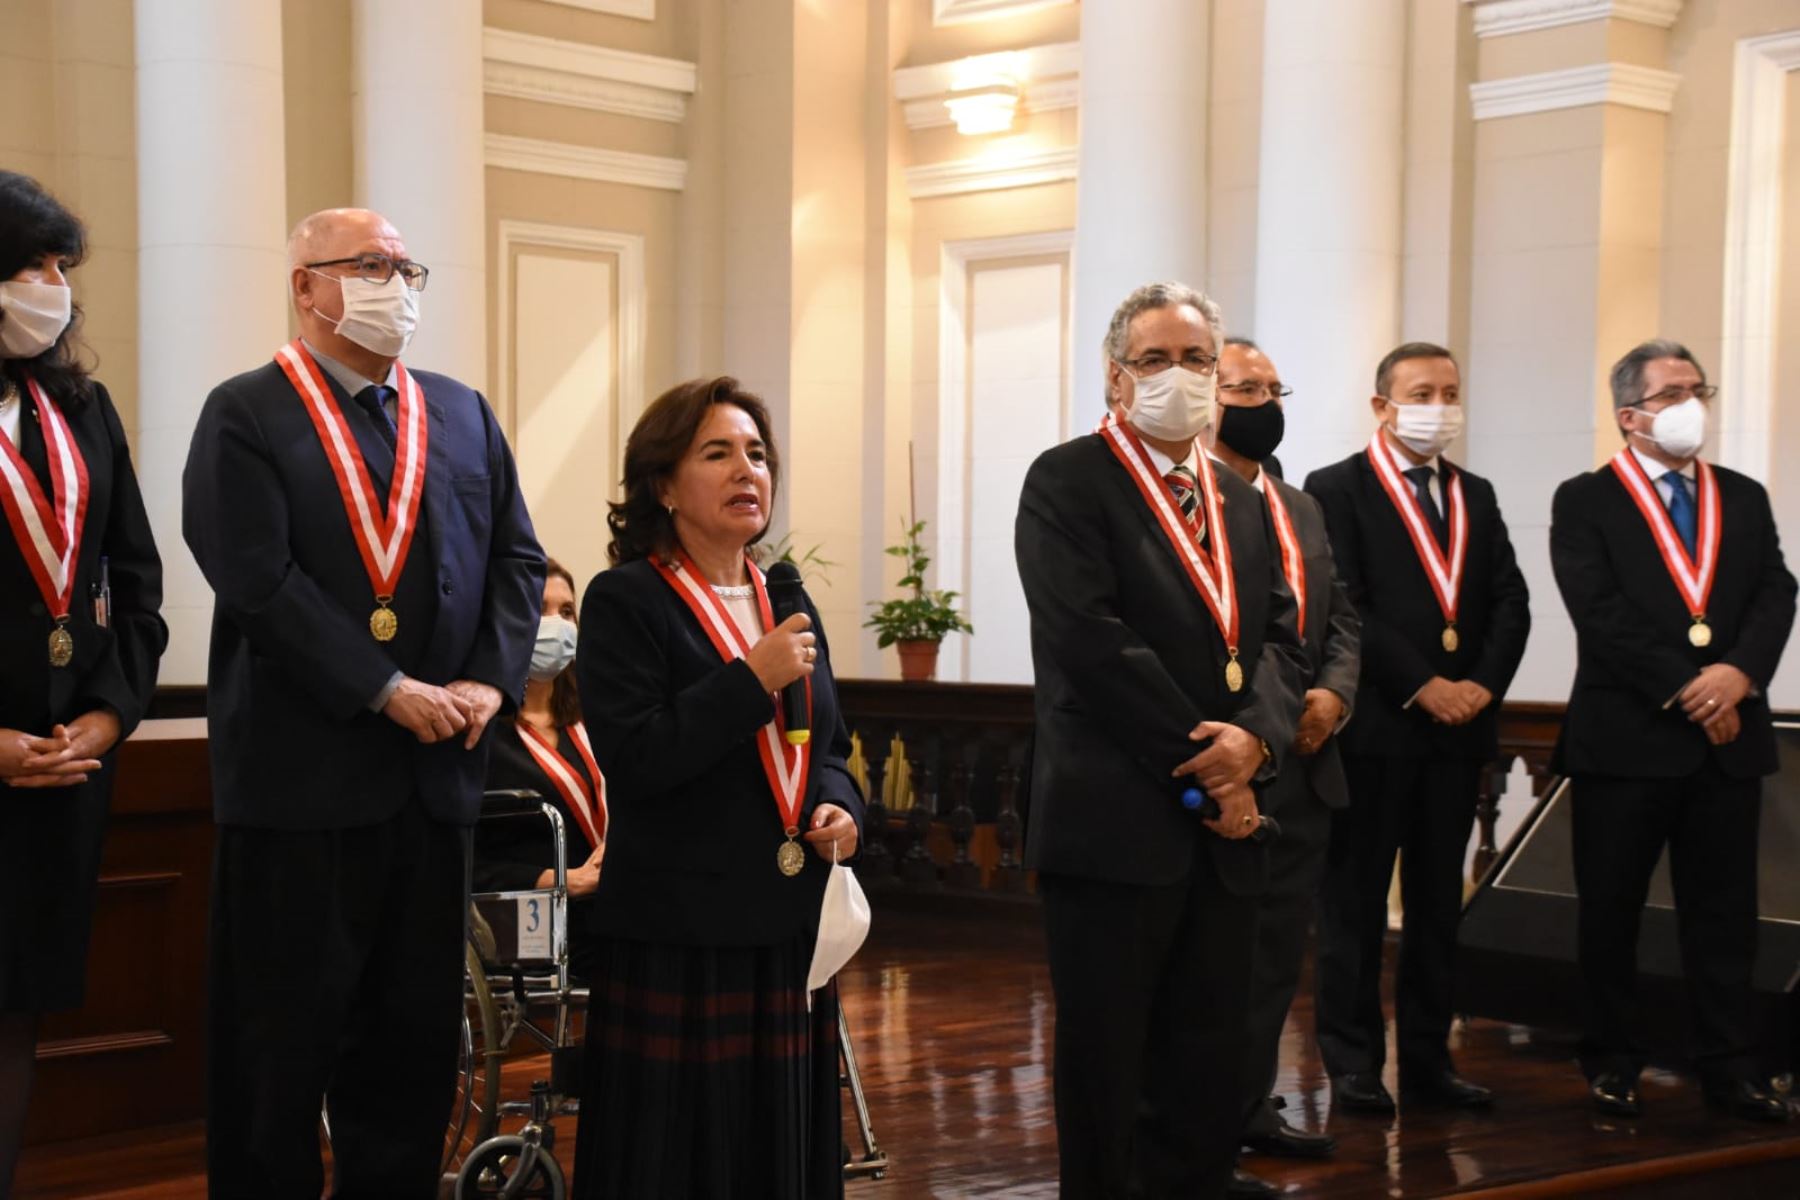 Jueces y juezas supremos eligen a Elvia Barrios Alvarado como presidenta del Poder Judicial, convirtiéndose en la primera mujer en asumir este importante cargo. Foto: Poder Judicial